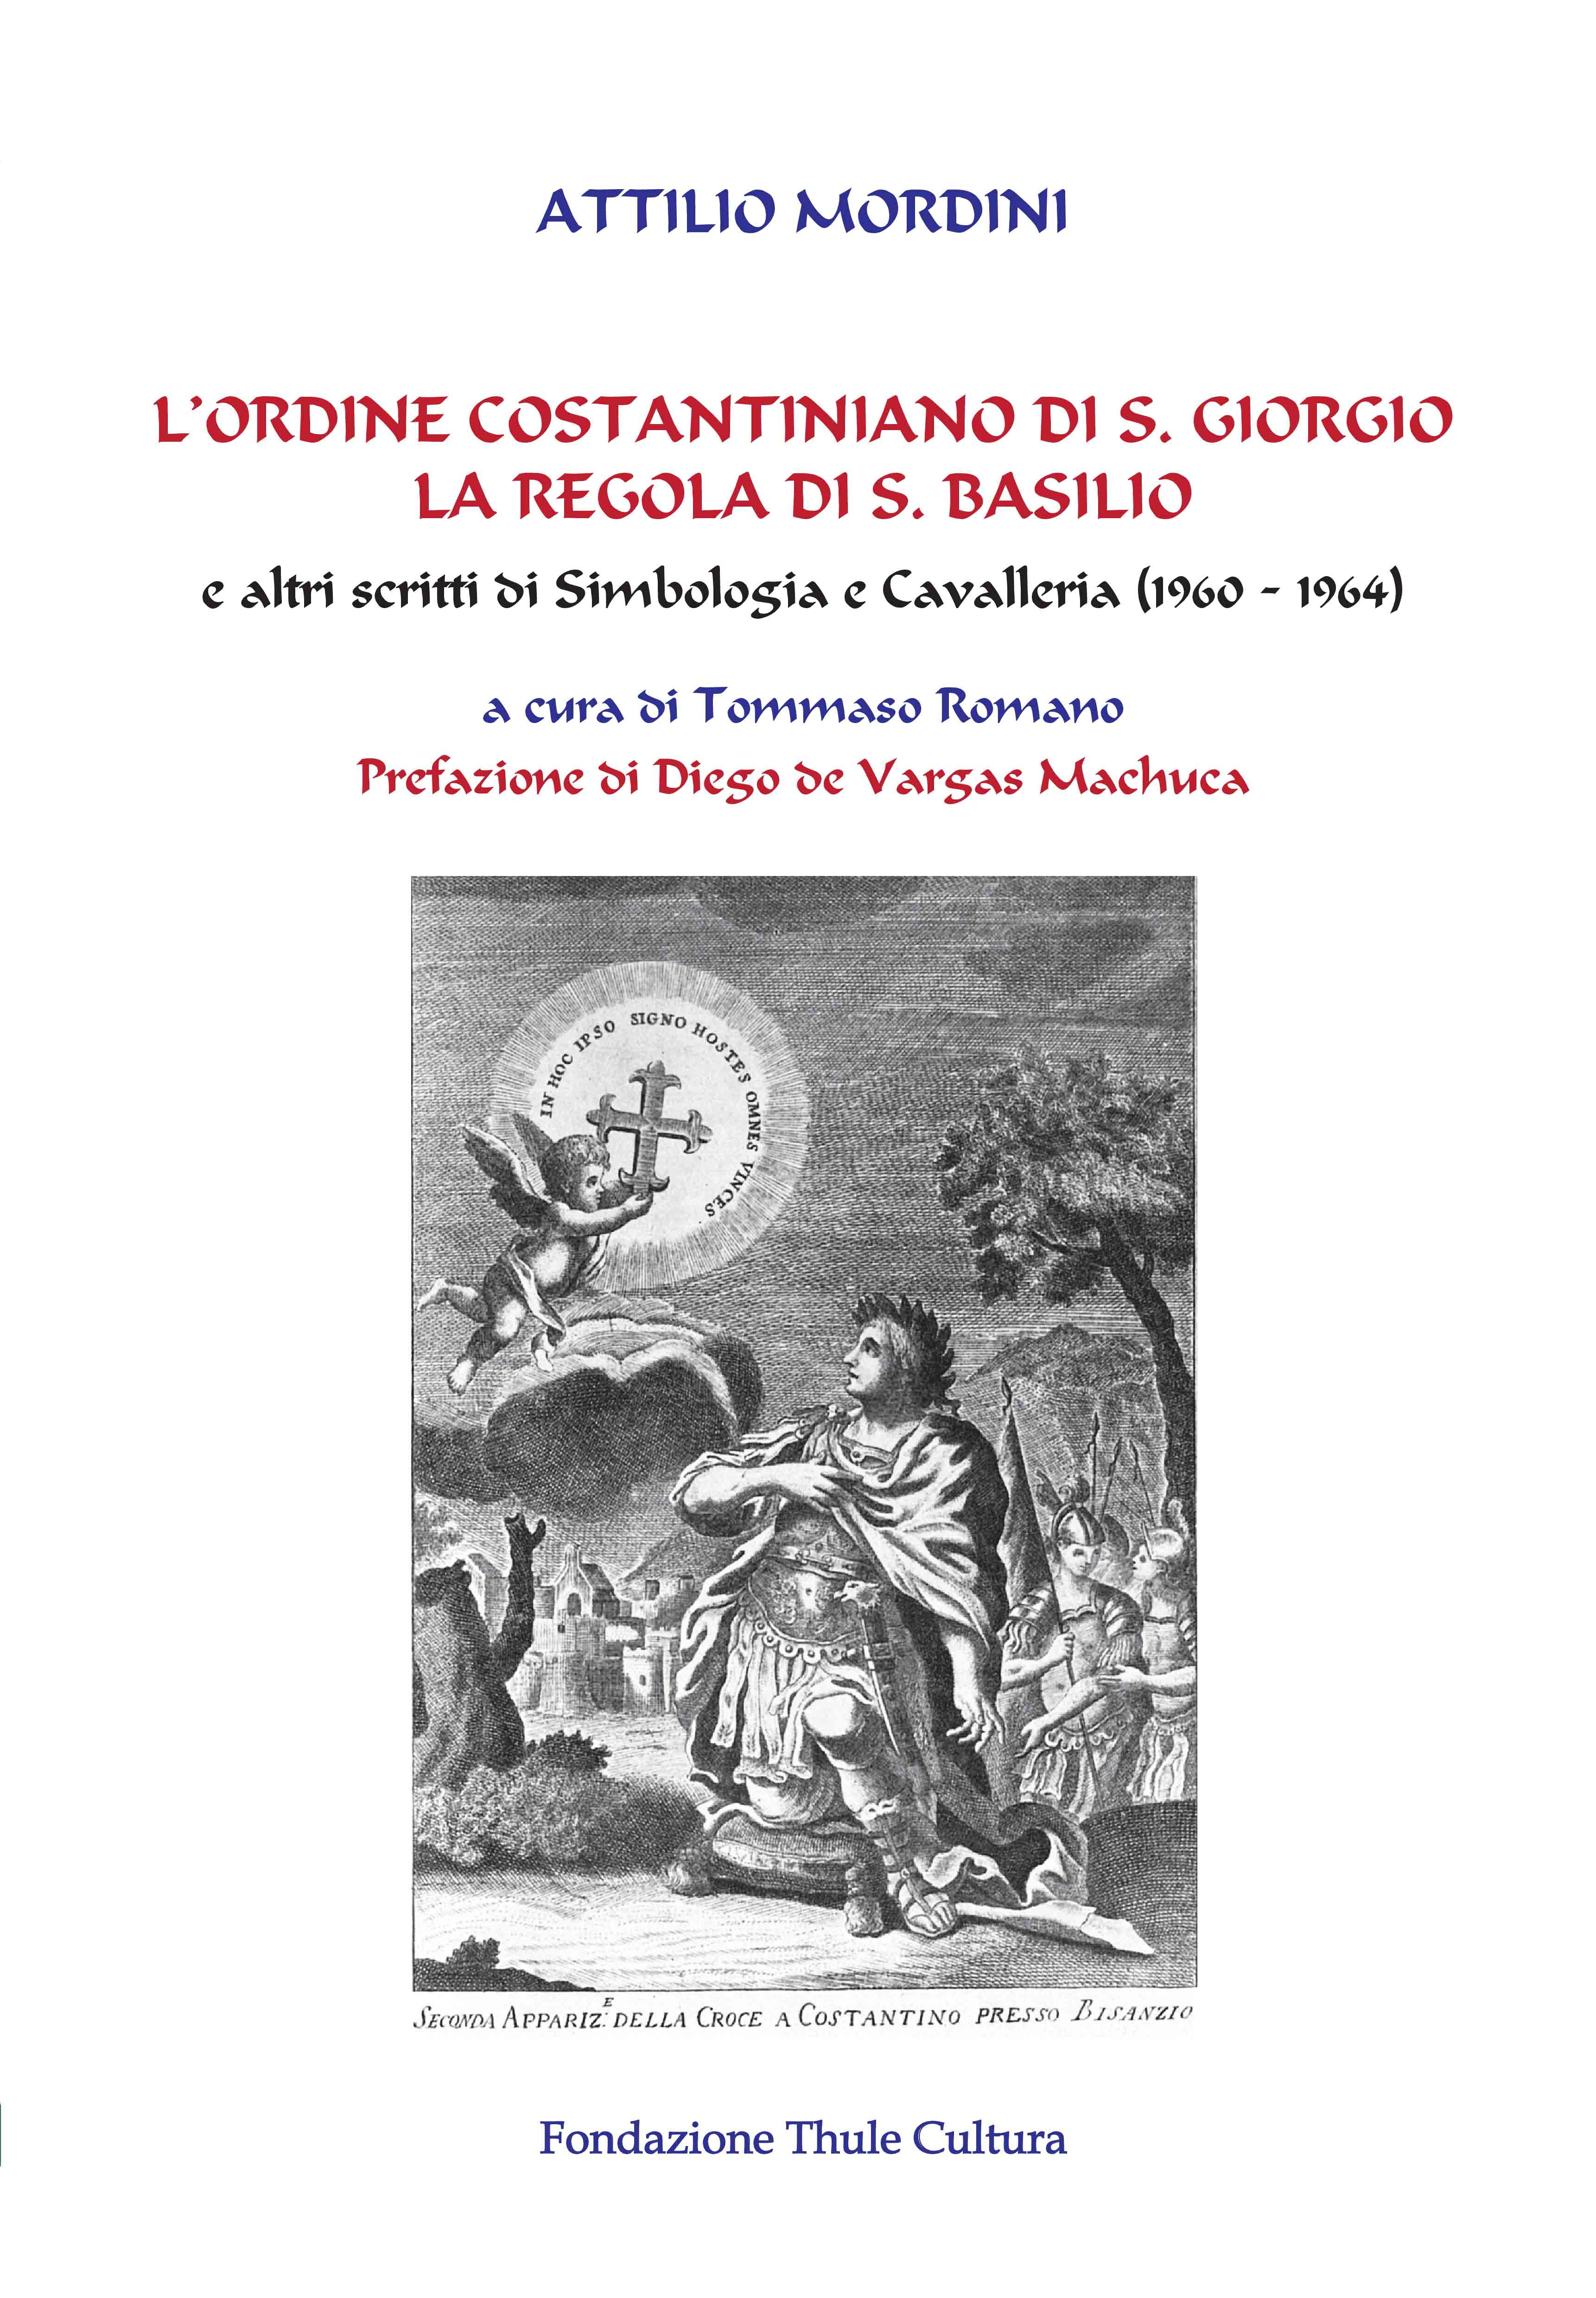 “Attilio Mordini, “L’Ordine Costantiniano di S. Giorgio e la regola di S. Basilio” (ed. Thule). A cura di Tommaso Romano